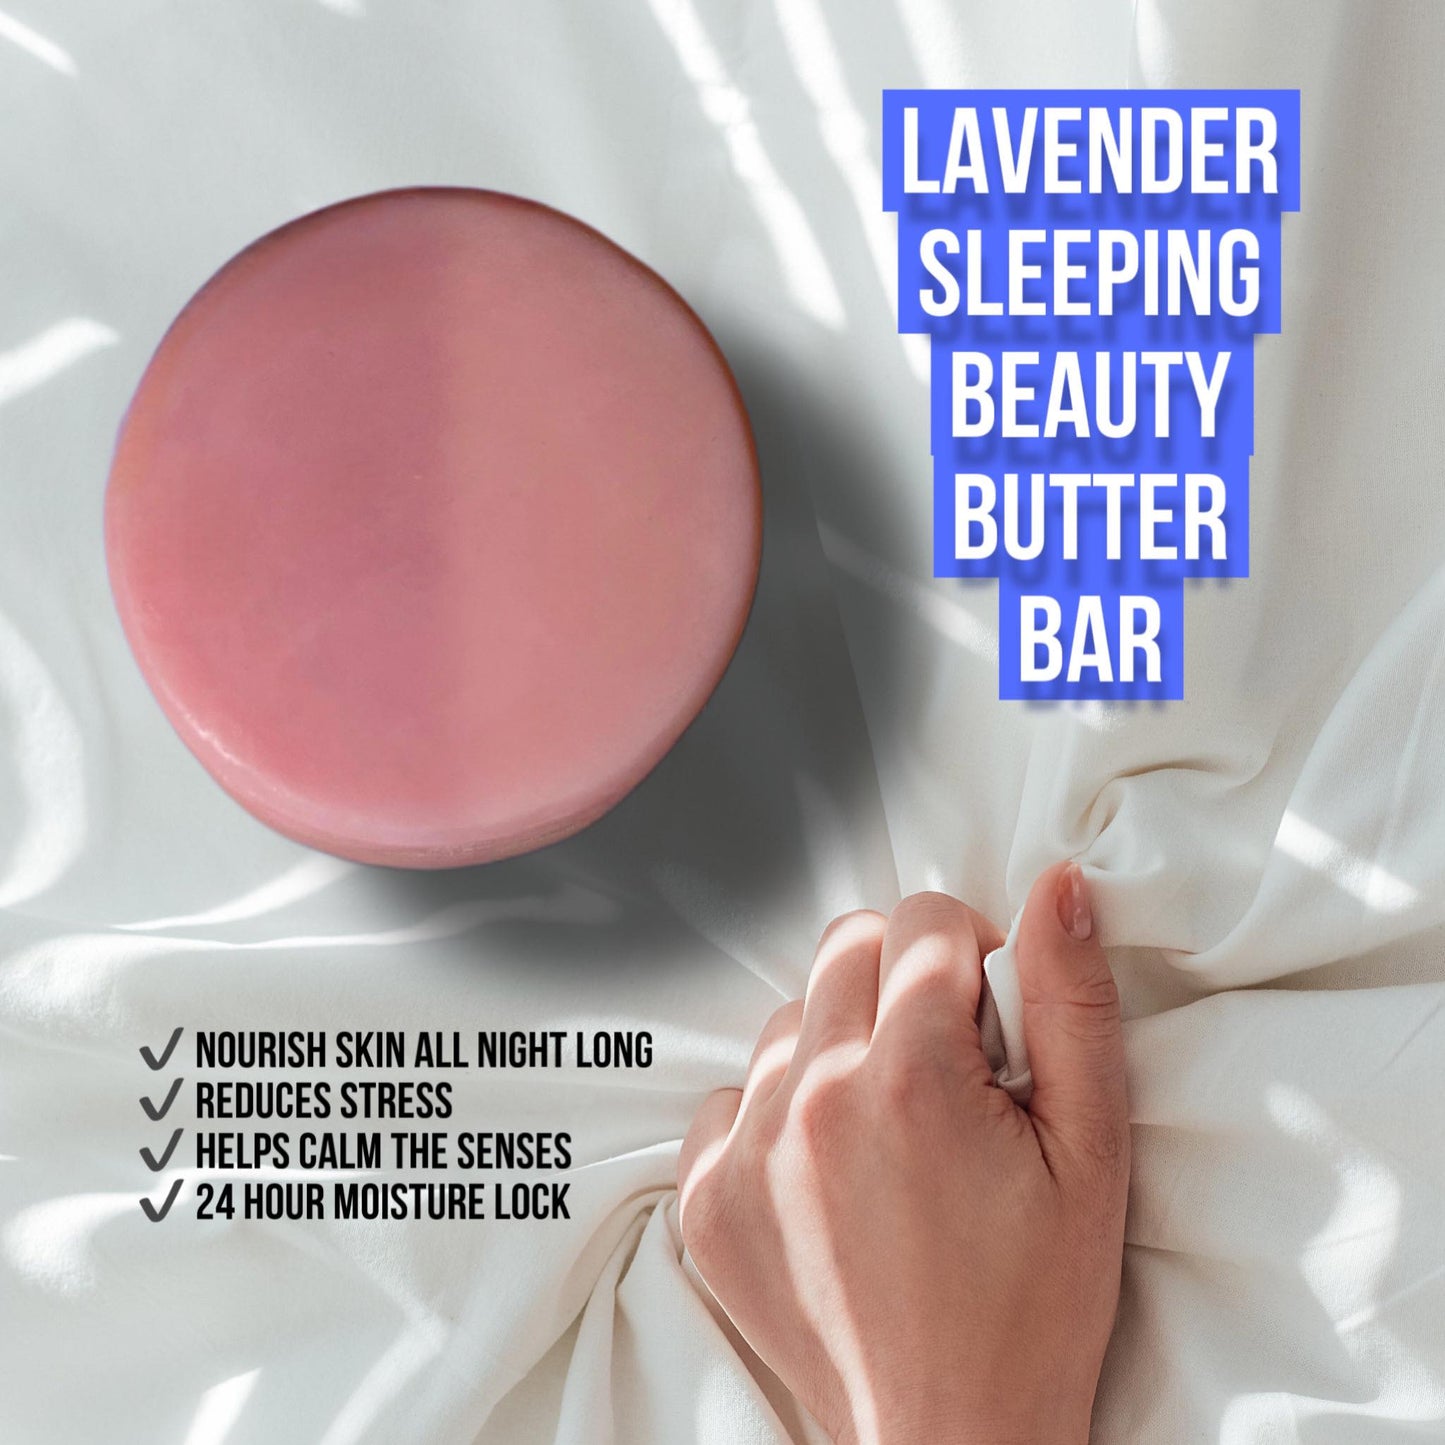 Sleeping Beauty Lavender Butter Bar